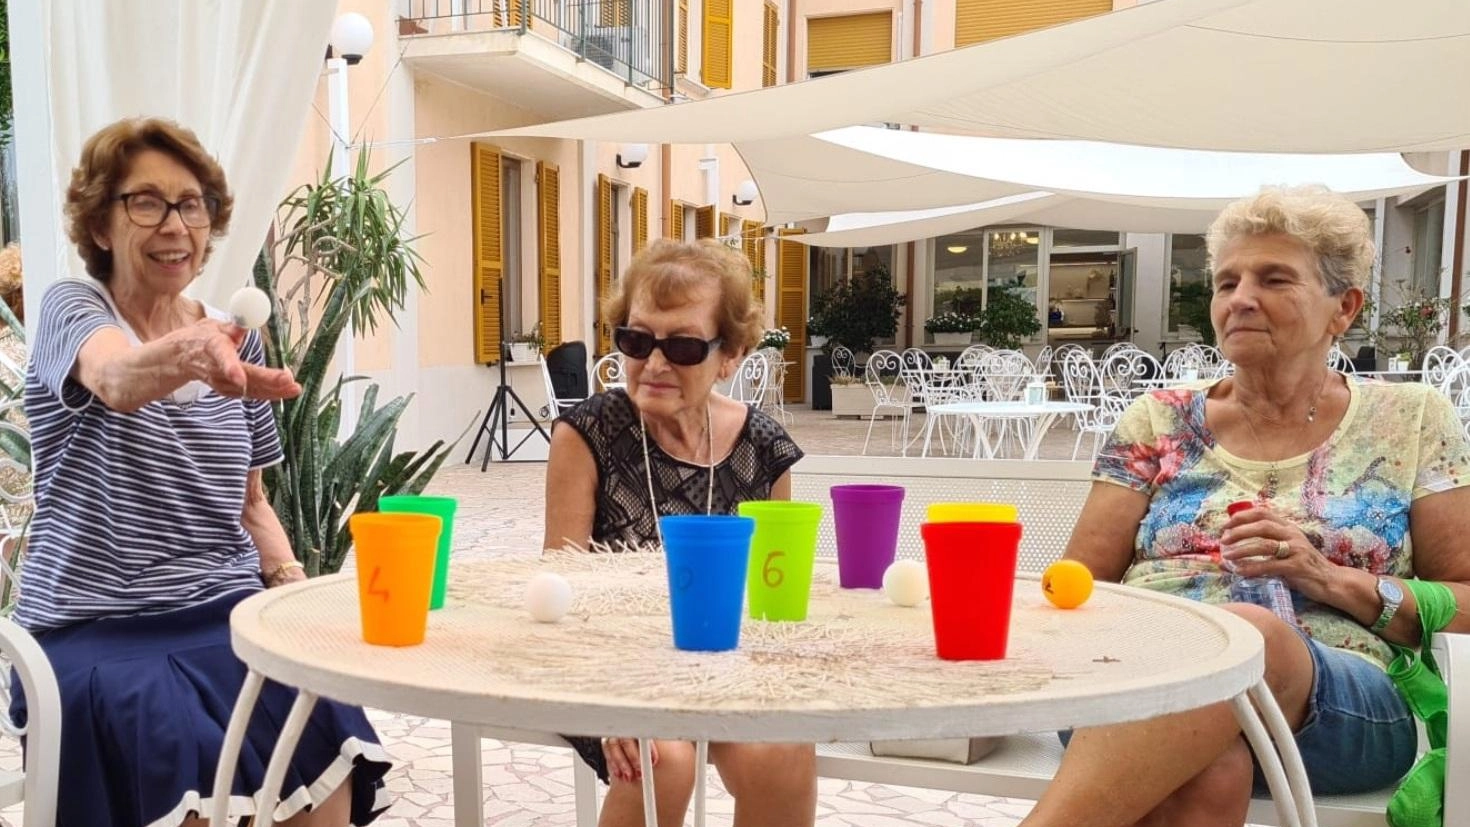 Anziani in vacanza con contributo: "Un’occasione per socializzare"